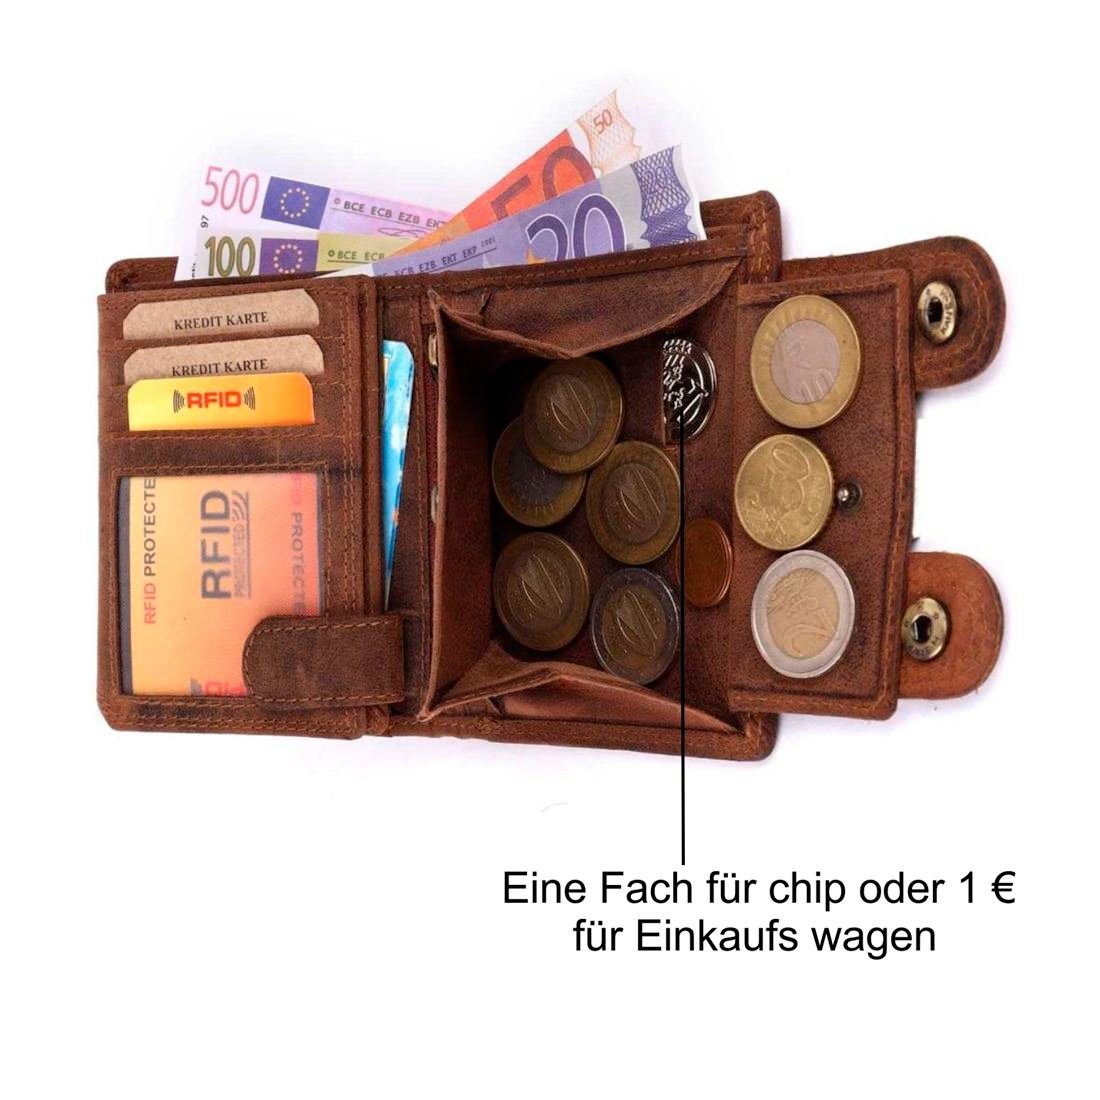 SHG Geldbörse Herren Leder Börse Kette Büffelleder RFID mit Schutz Brieftasche Männerbörse mit Münzfach Lederbörse Portemonnaie